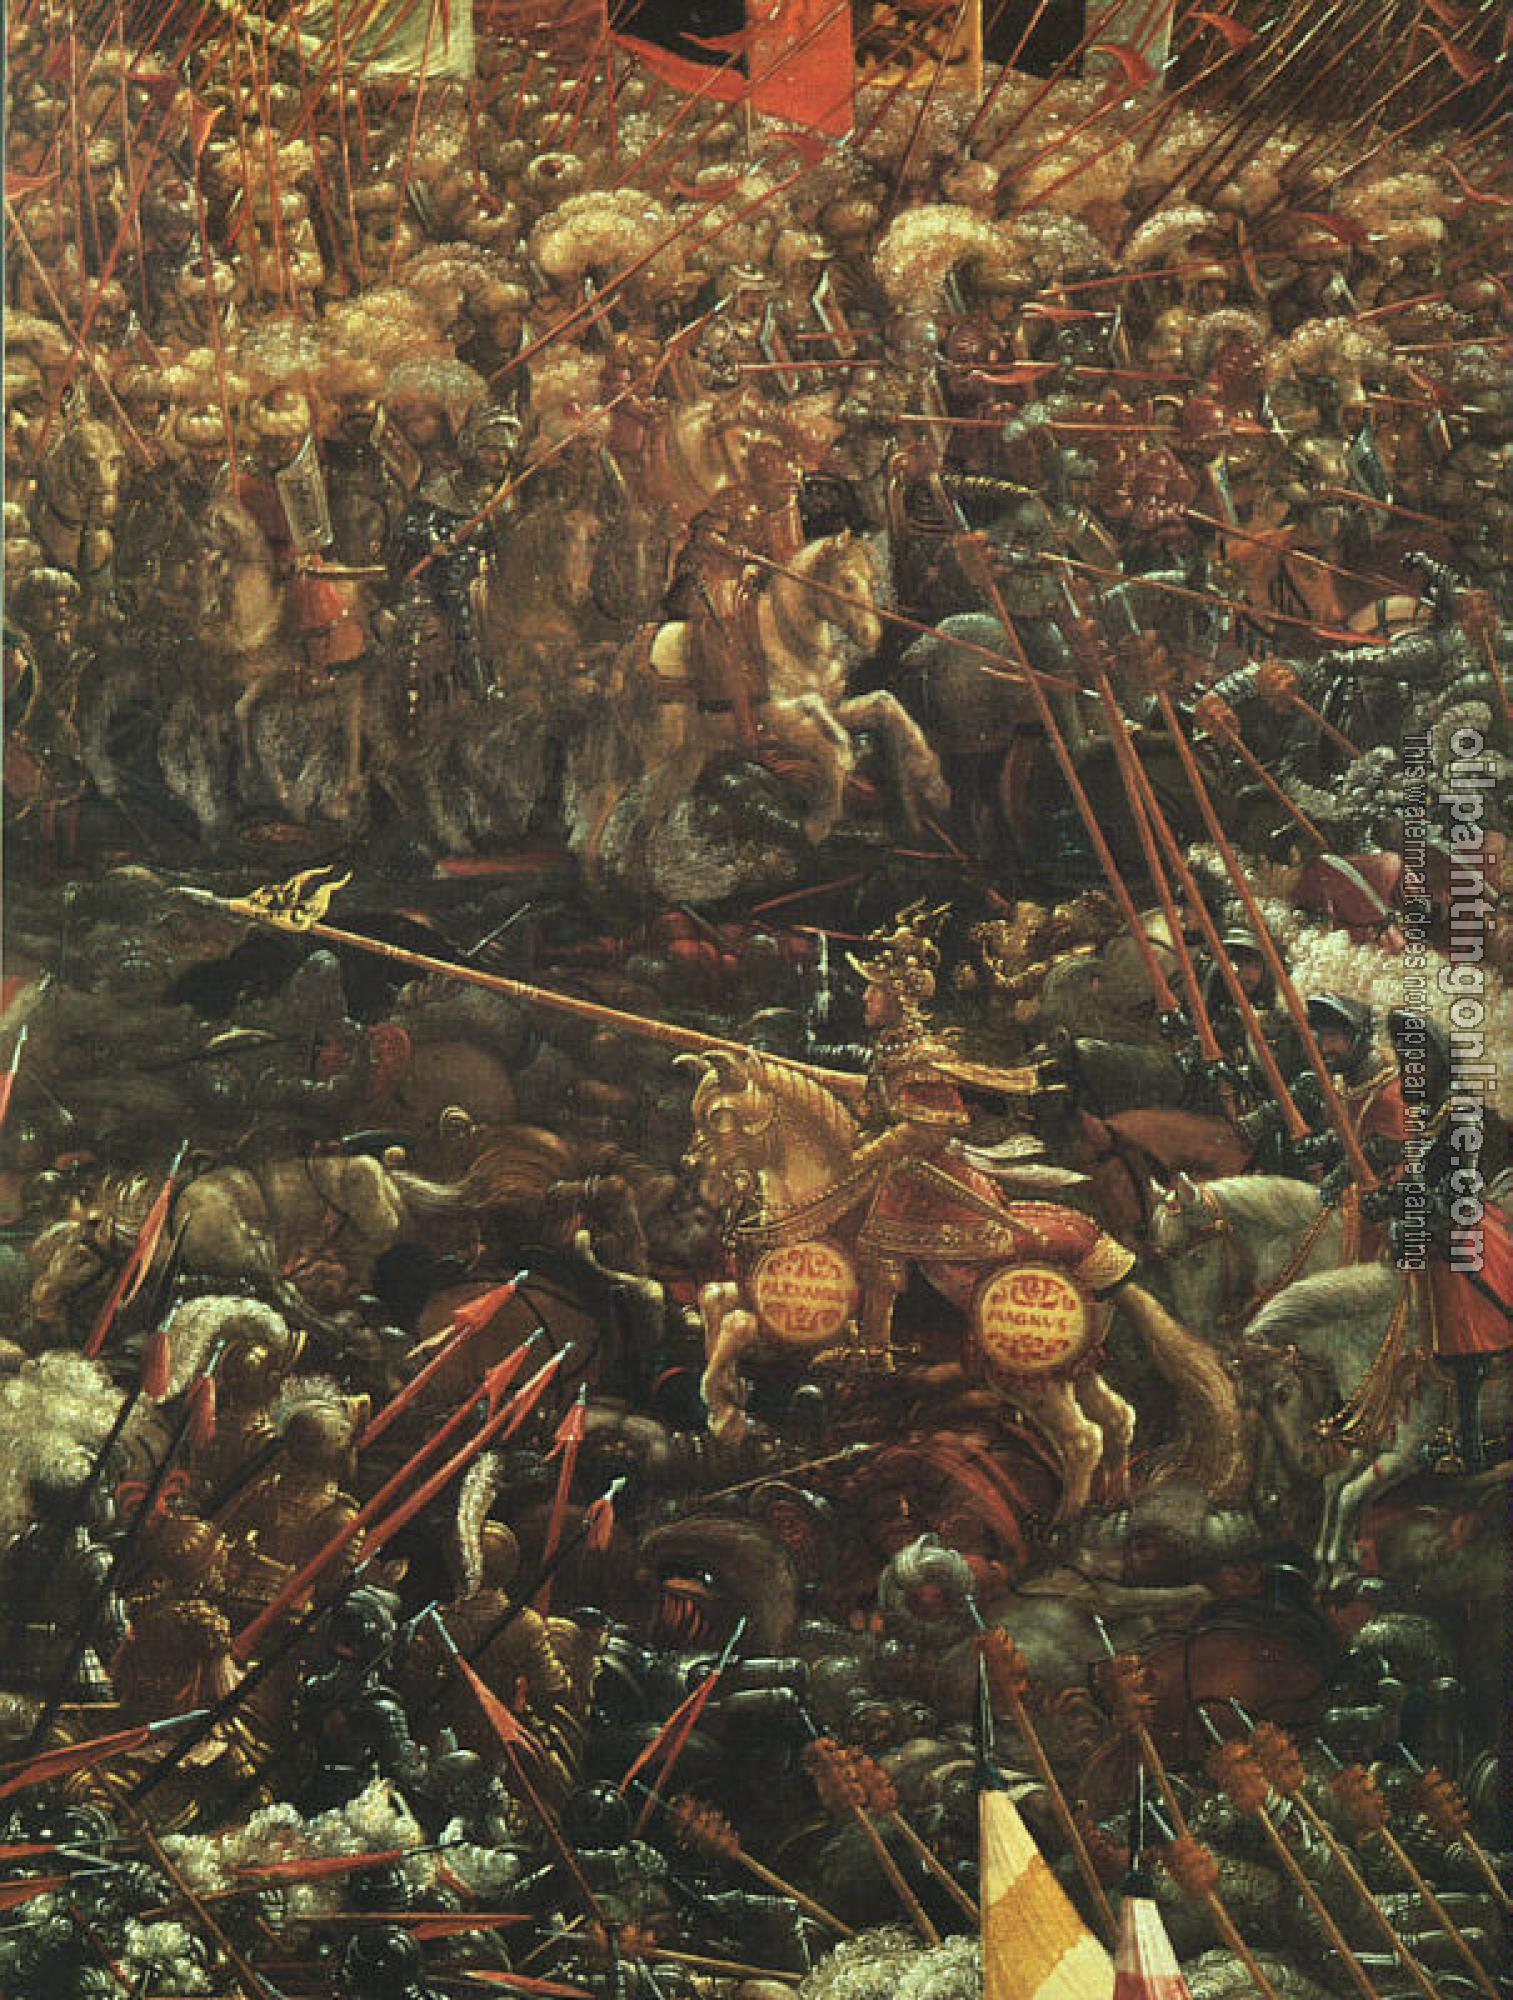 Altdorfer, Albrecht - The Battle of Alexander